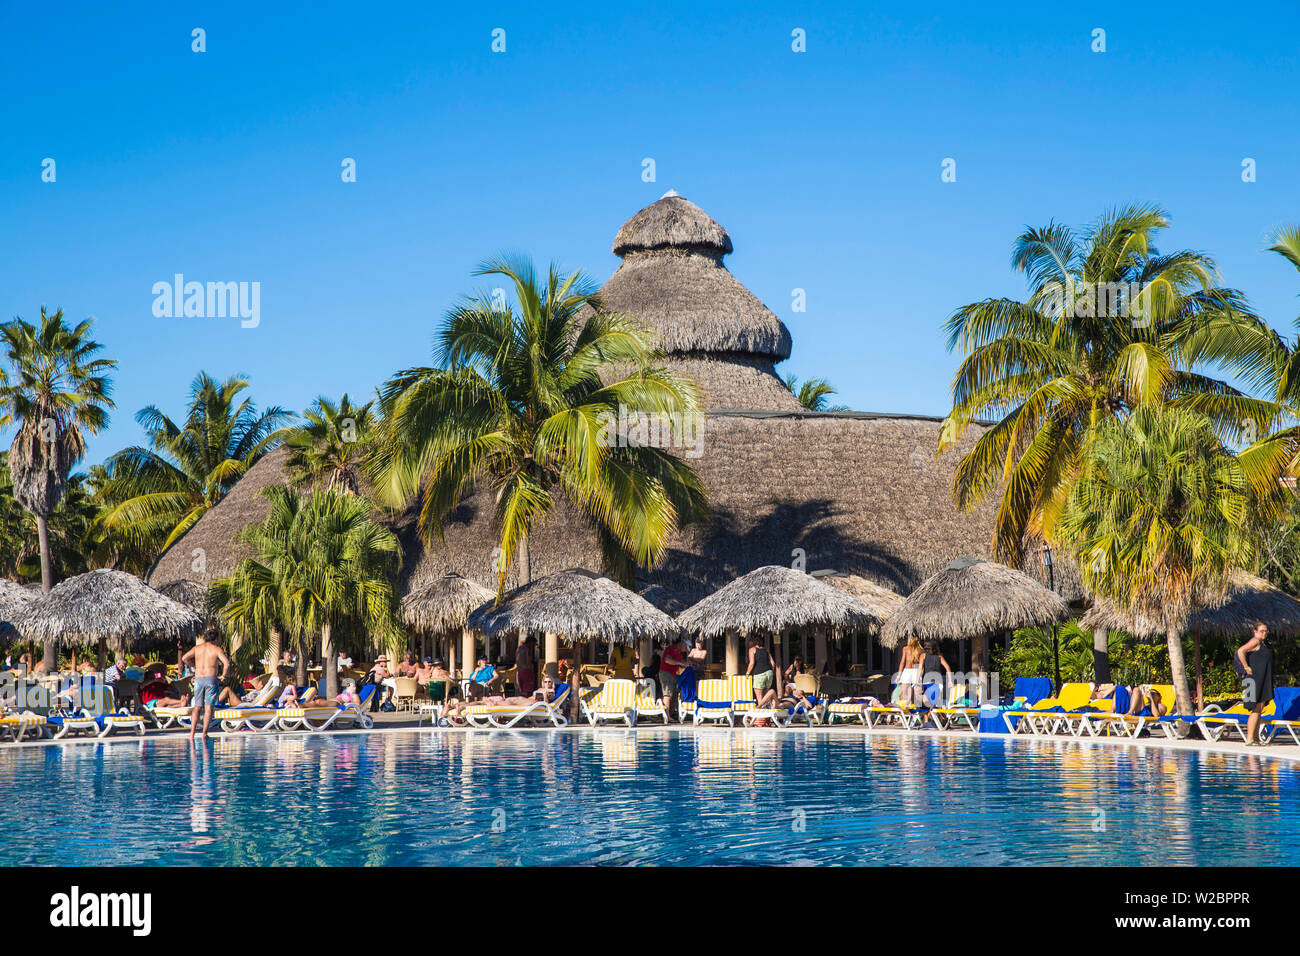 Cuba, Varadero, Varadero beach, Hotel swimming pool Stock Photo